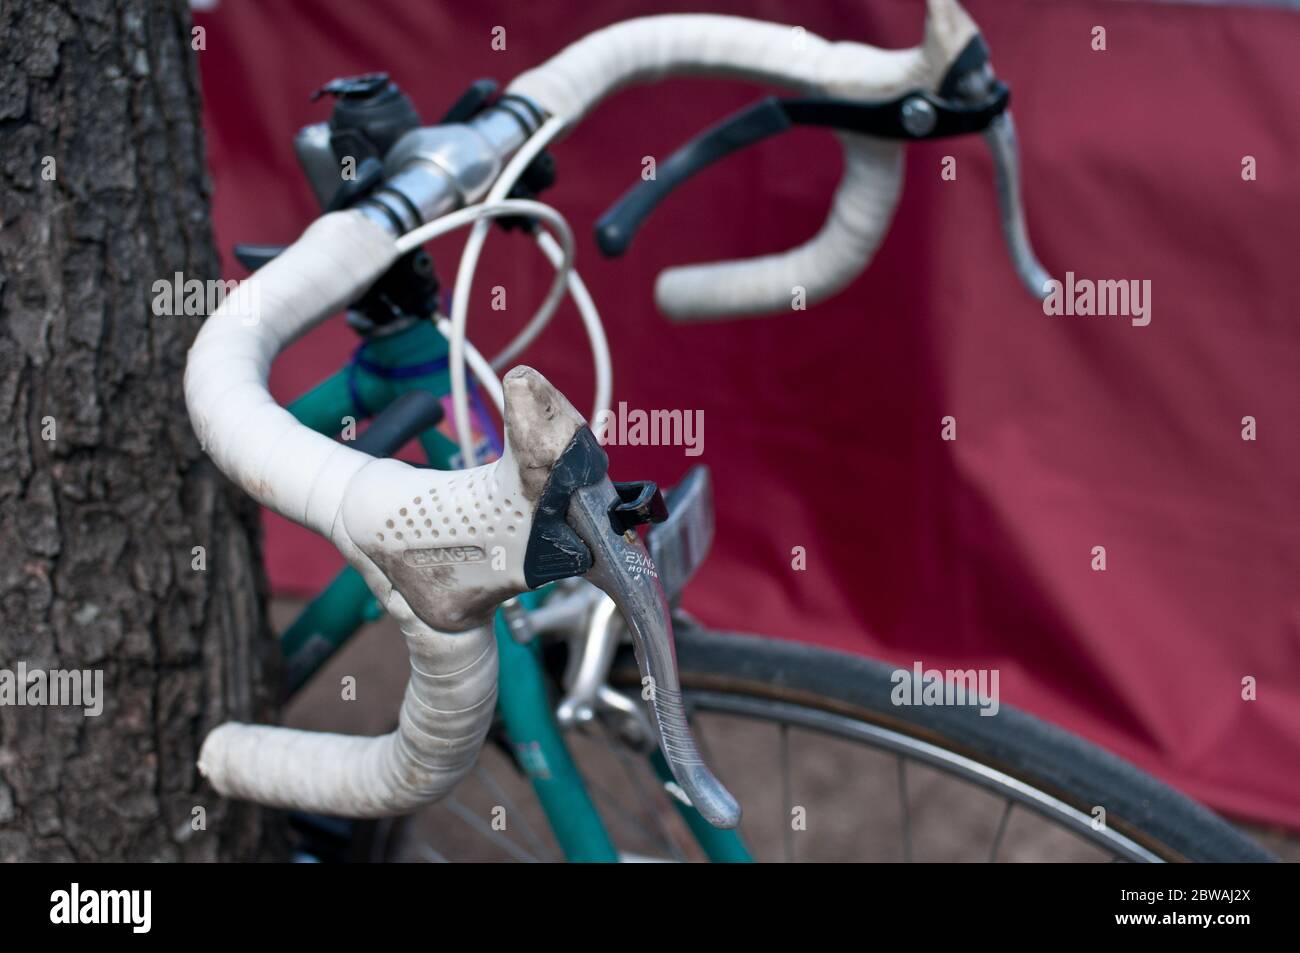 Manubrio di una vecchia bicicletta da corsa con manico a goccia sul marciapiede, Brooklyn, New York, USA Foto Stock